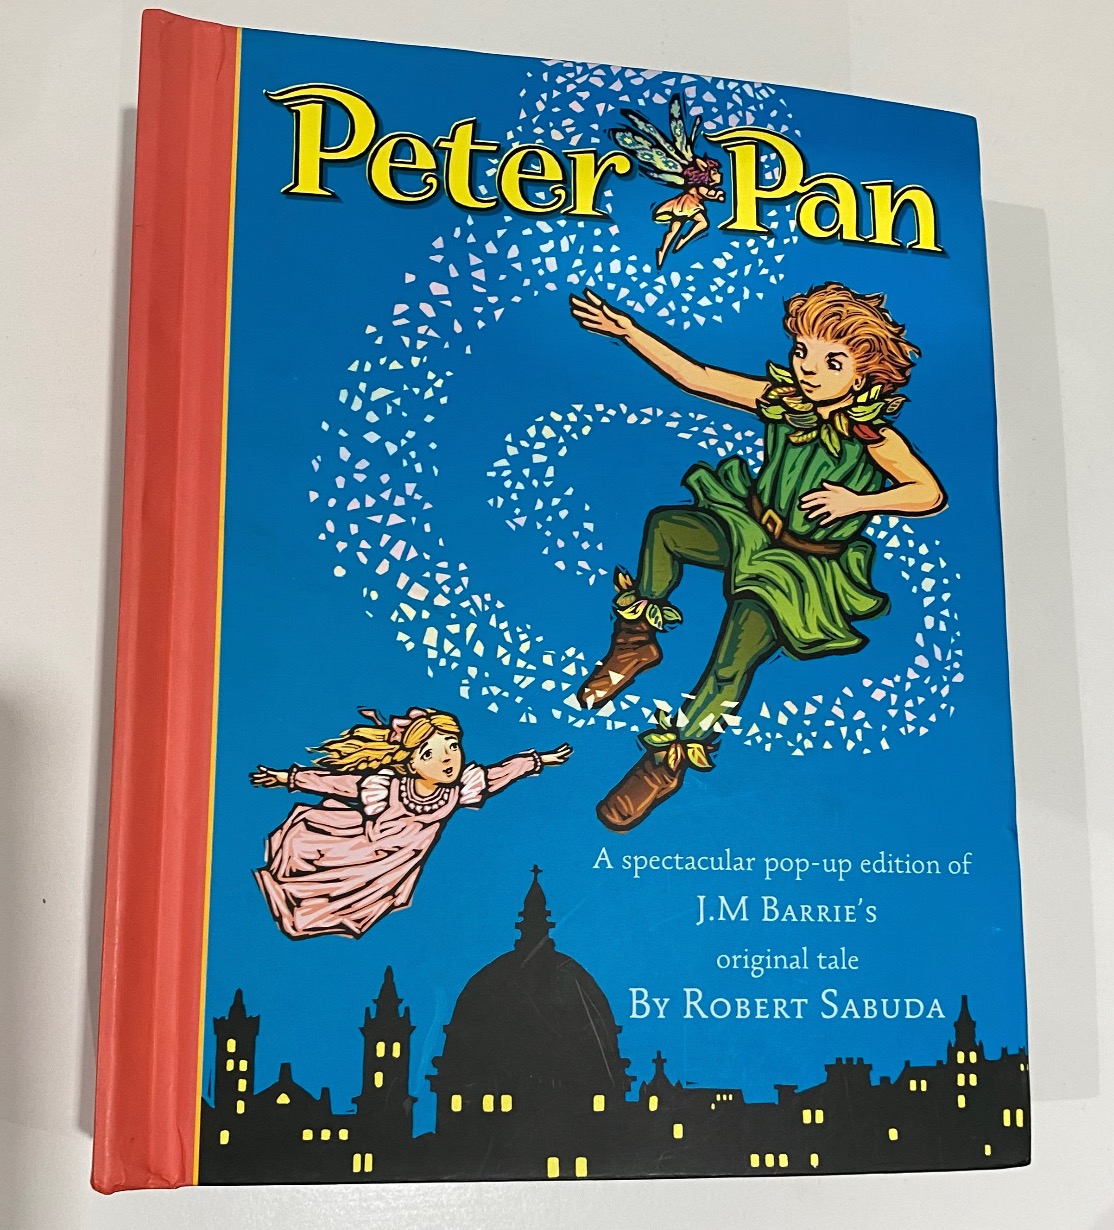 Peter Pan pop-up